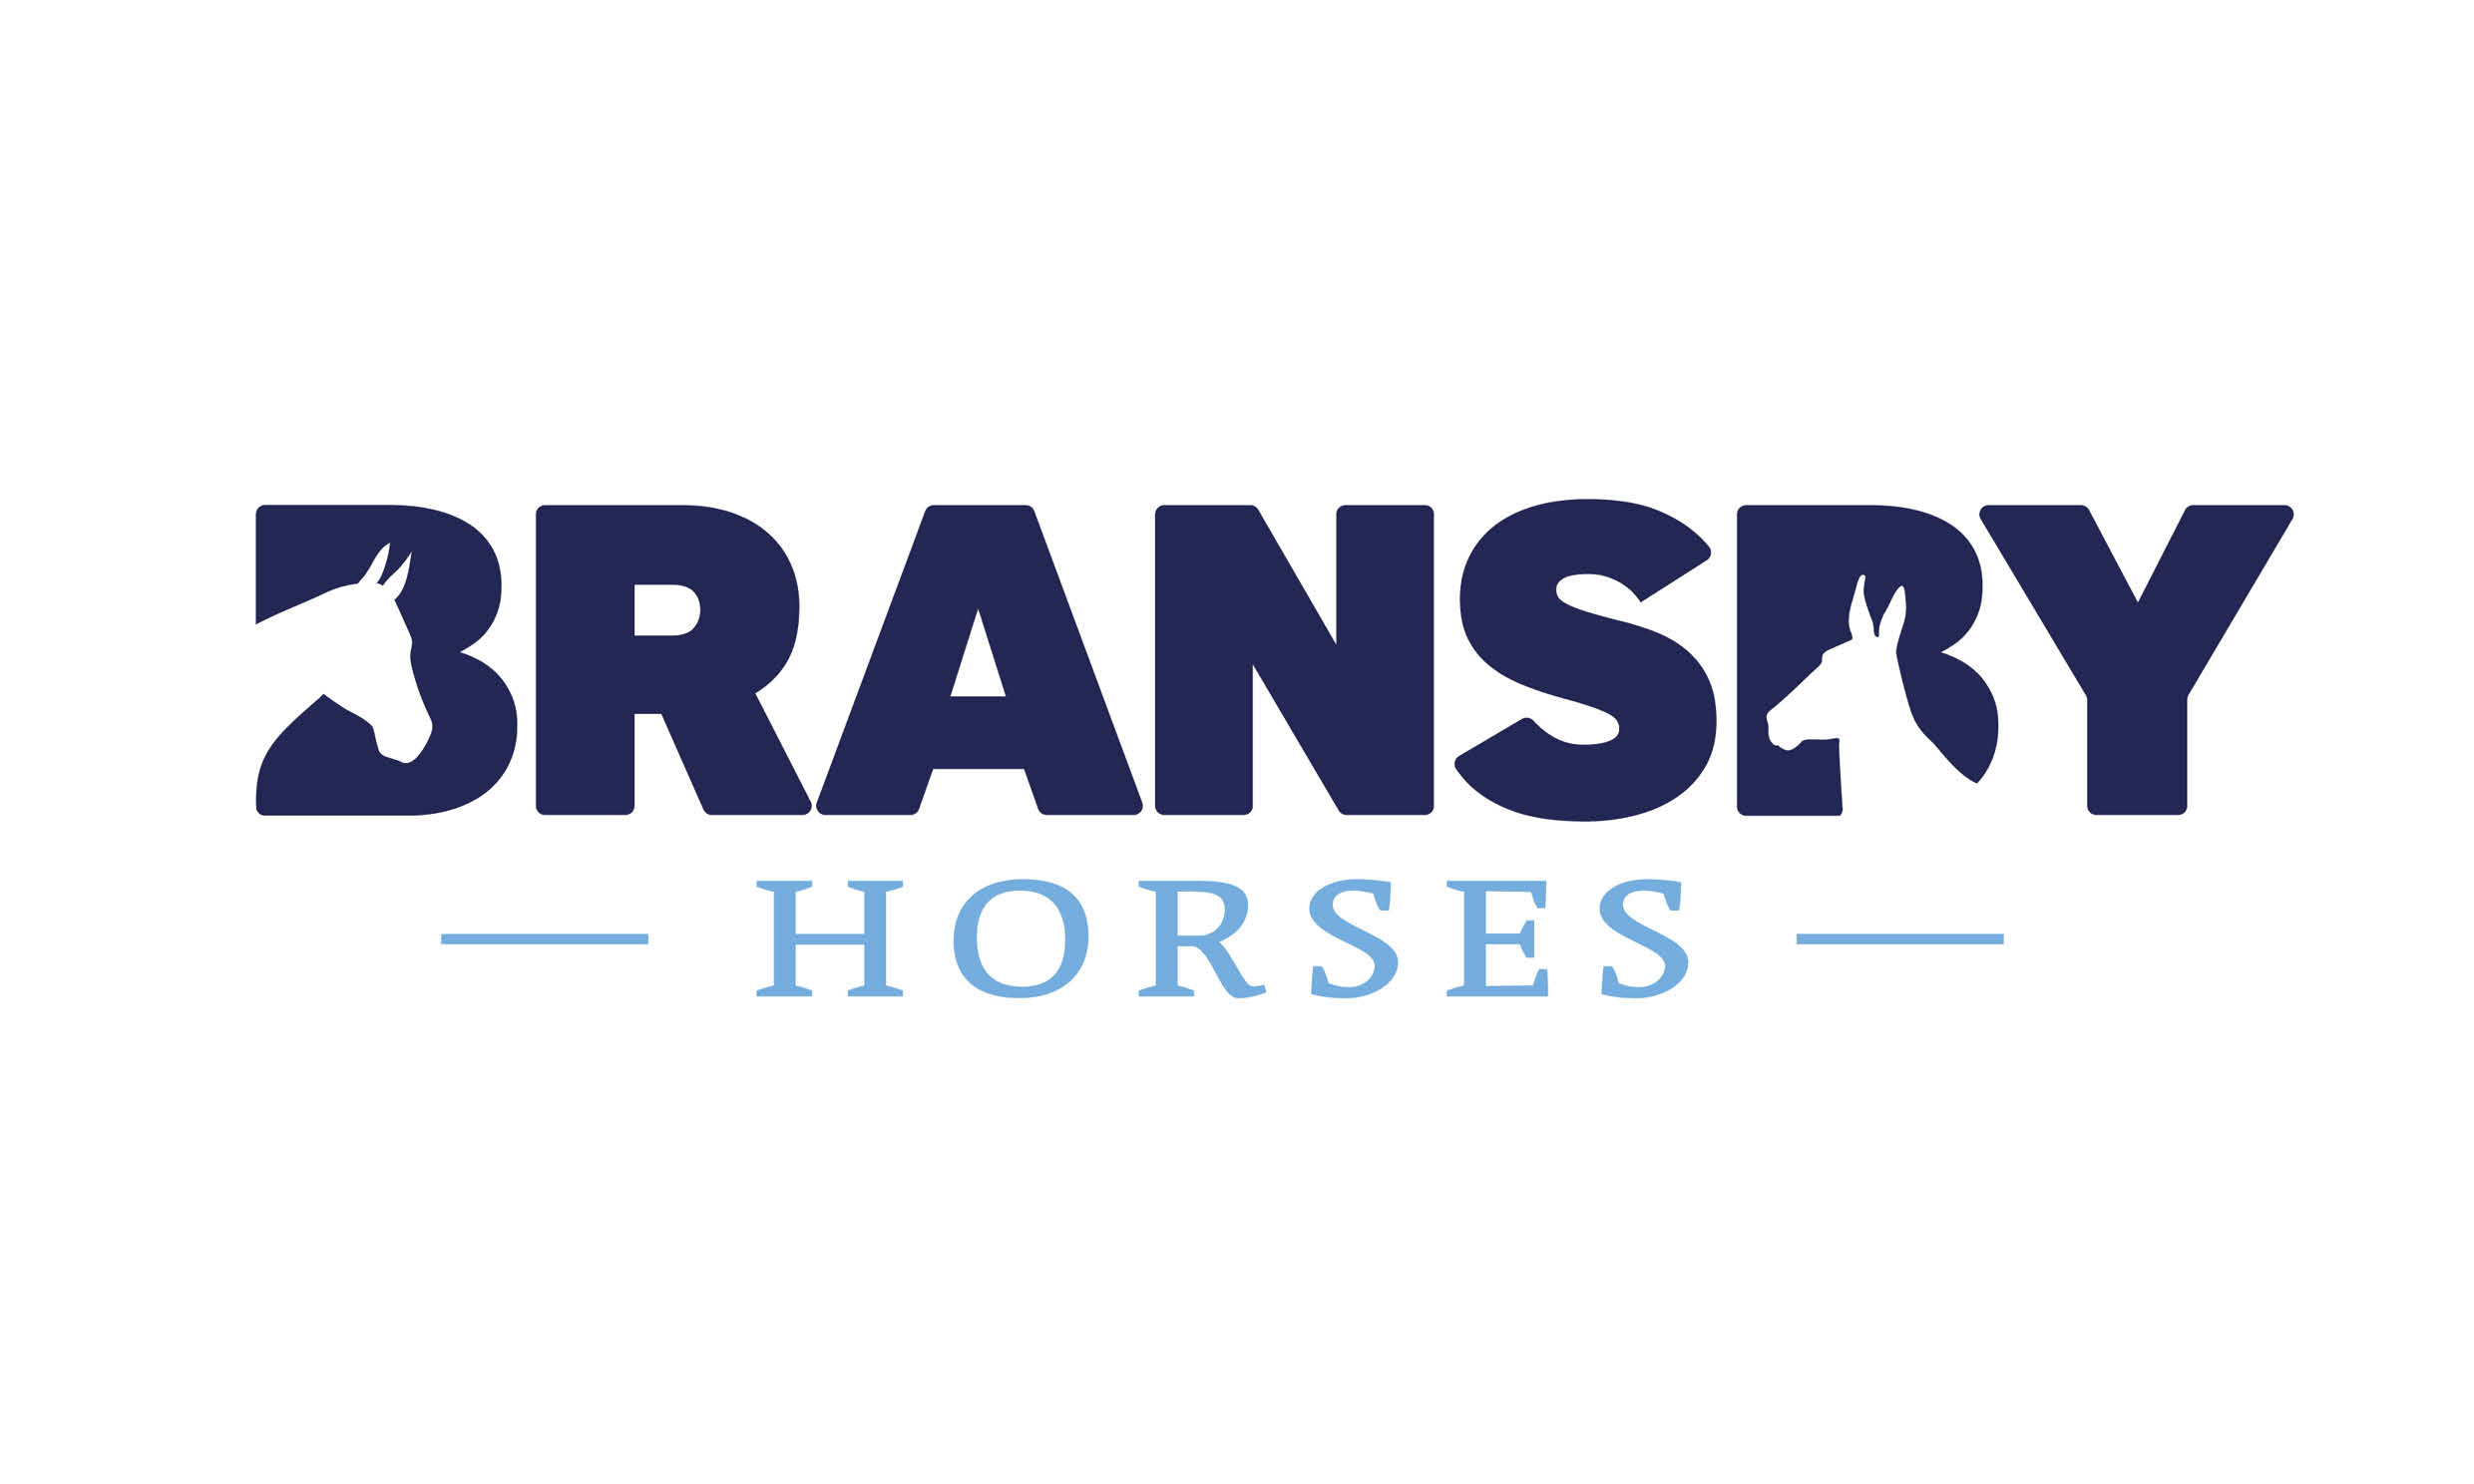 (c) Bransbyhorses.co.uk